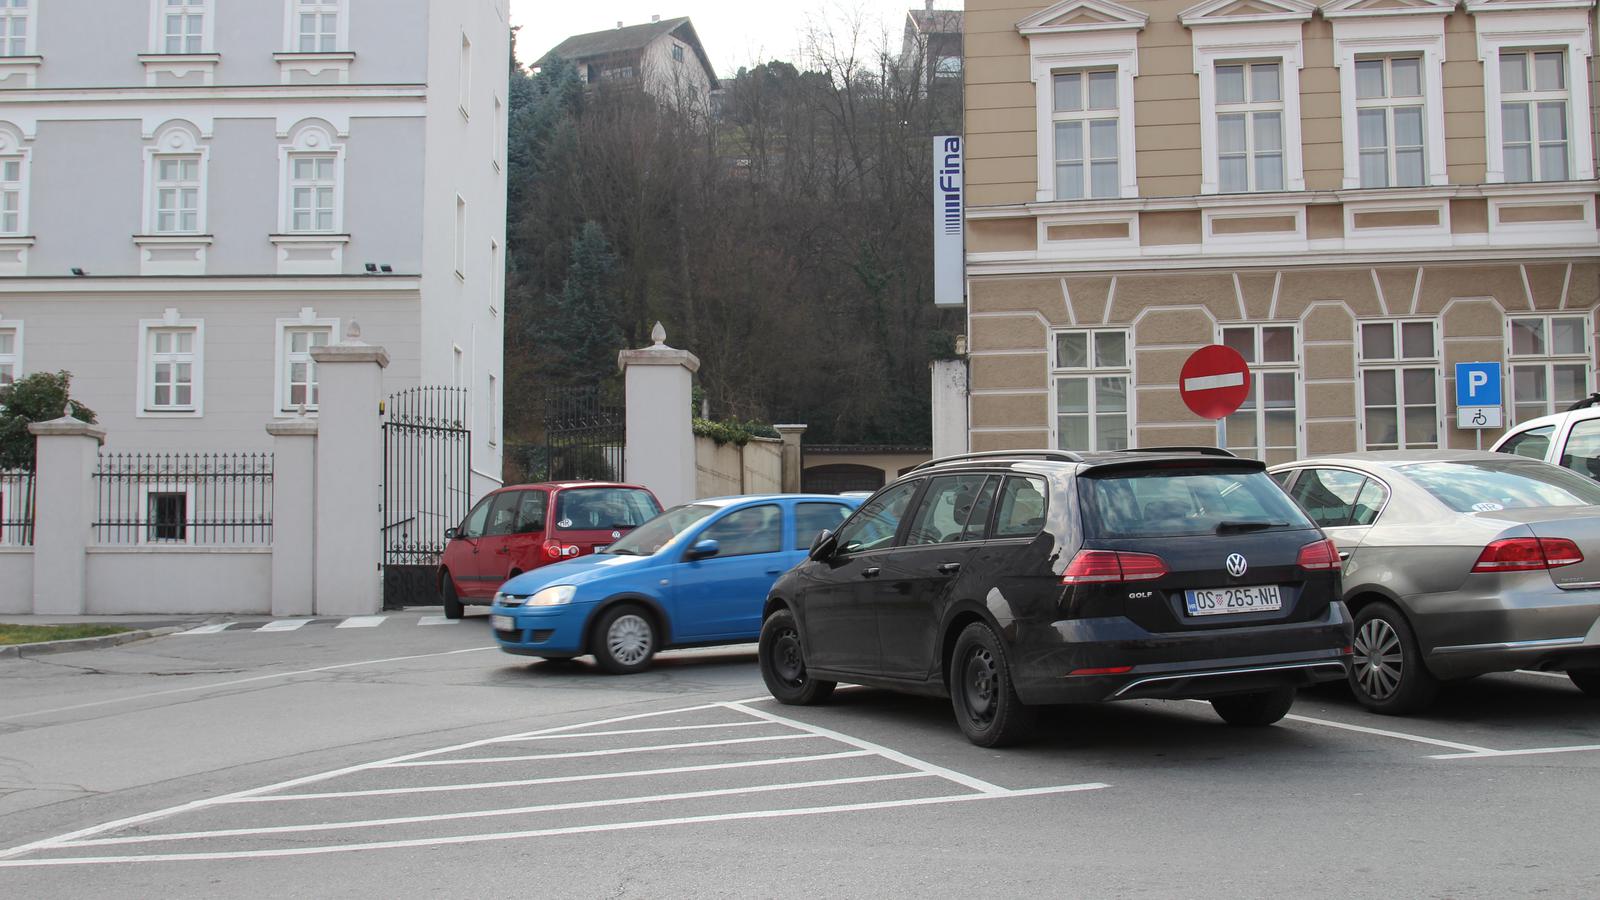 Parkiralište na Trgu SV. Trojstva u Požegi